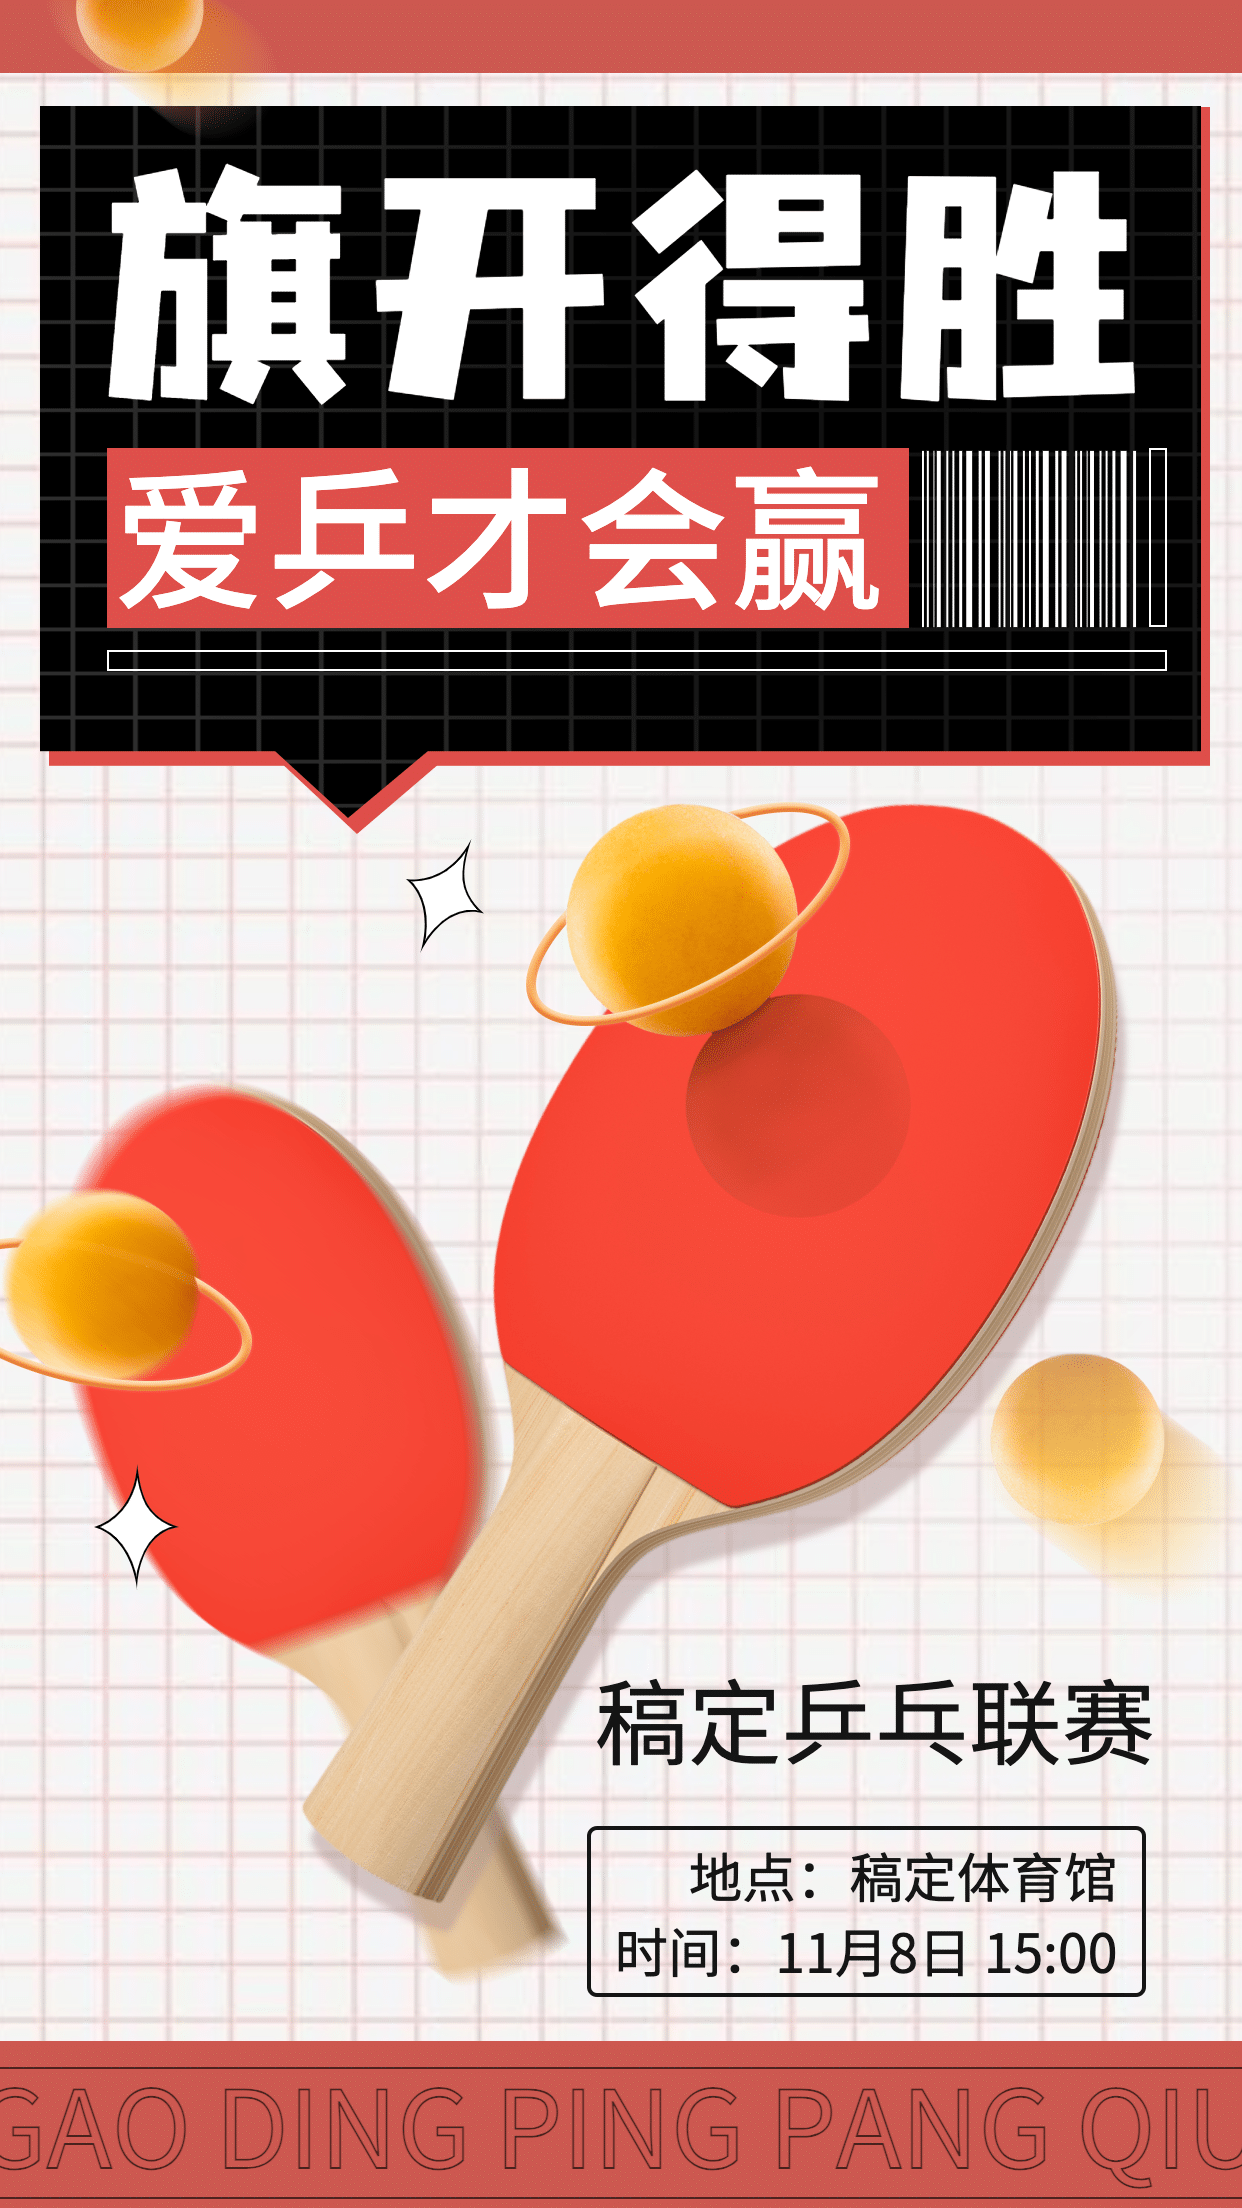 乒乓球运动赛事宣传海报